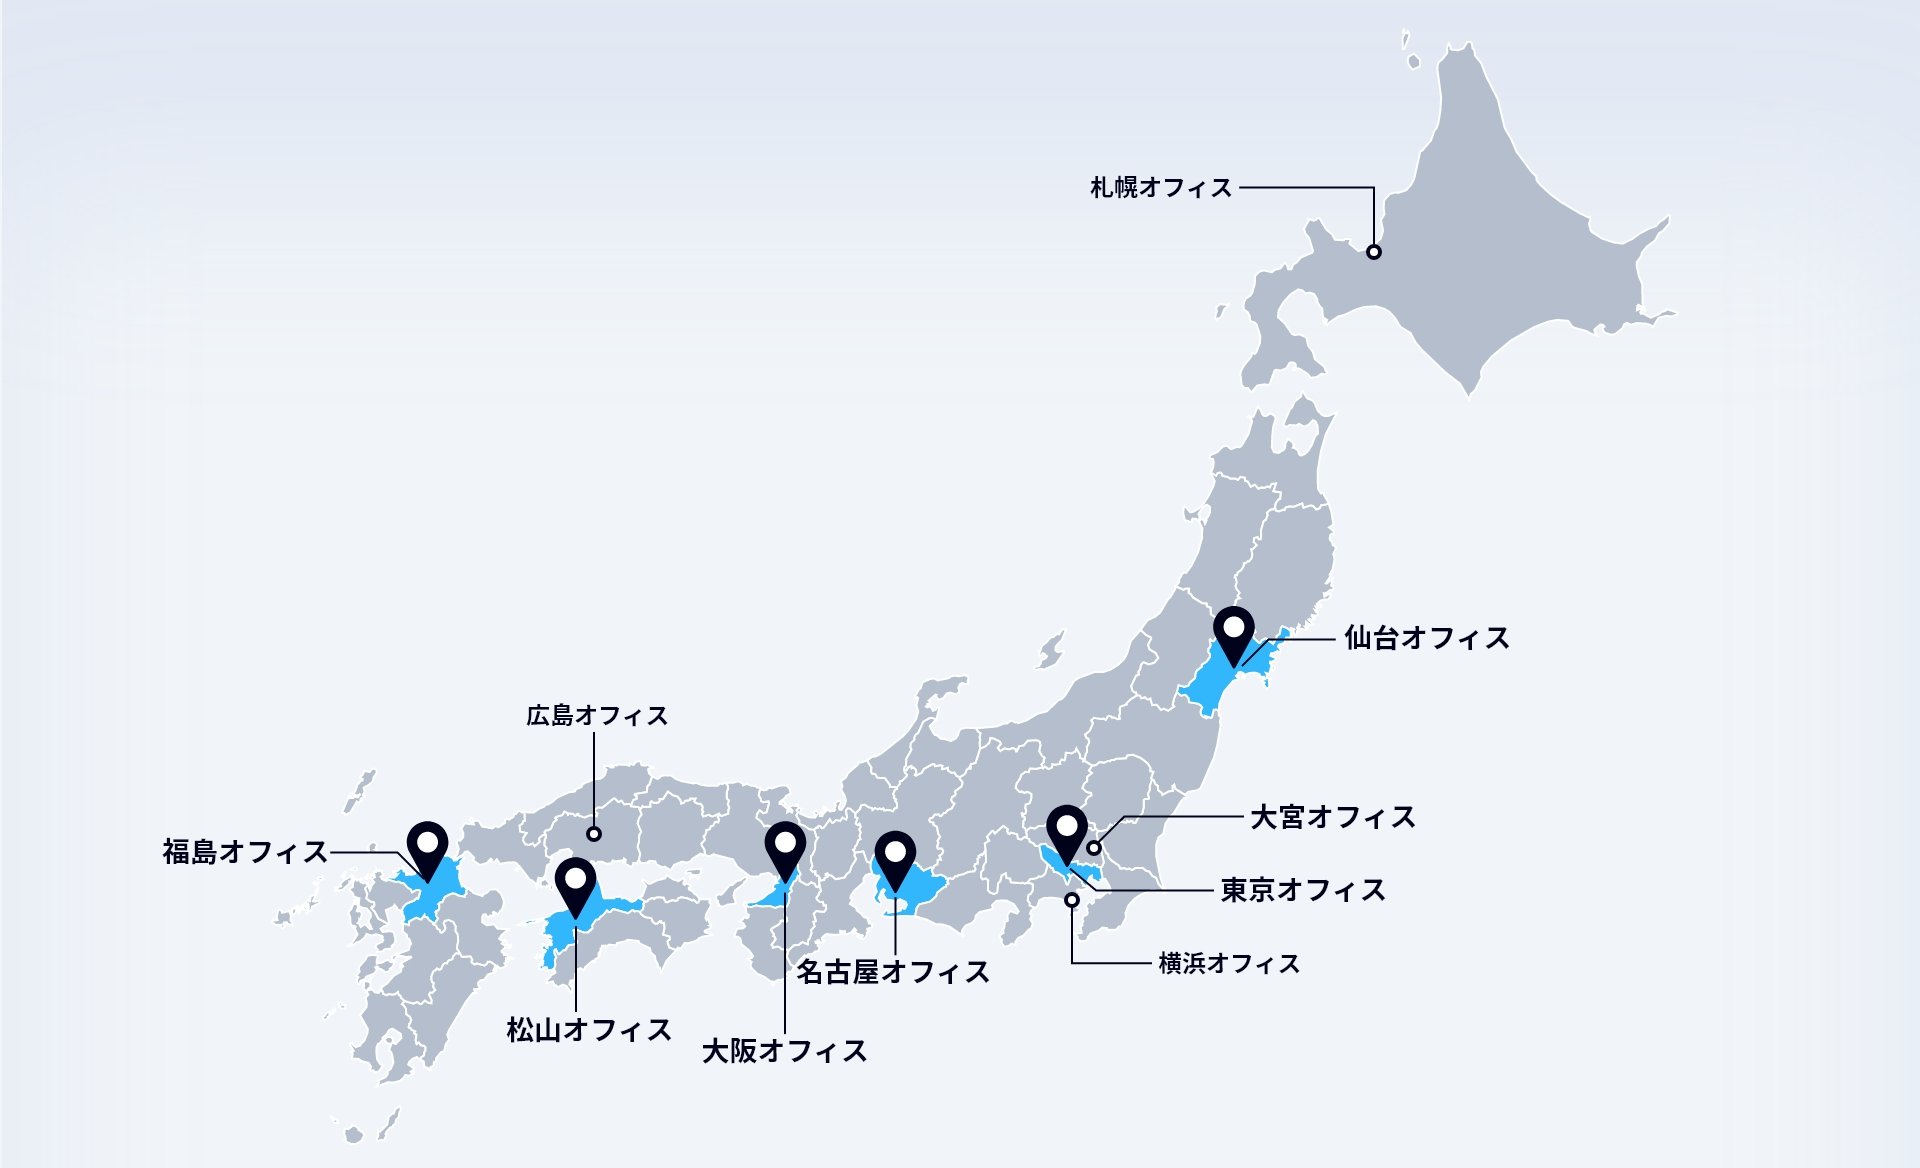 図表：各オフィスの場所を示した地図。札幌オフィス、仙台オフィス、東京オフィス、横浜オフィス、名古屋オフィス、大阪オフィス、広島オフィス、松山オフィス、福岡オフィスがある。